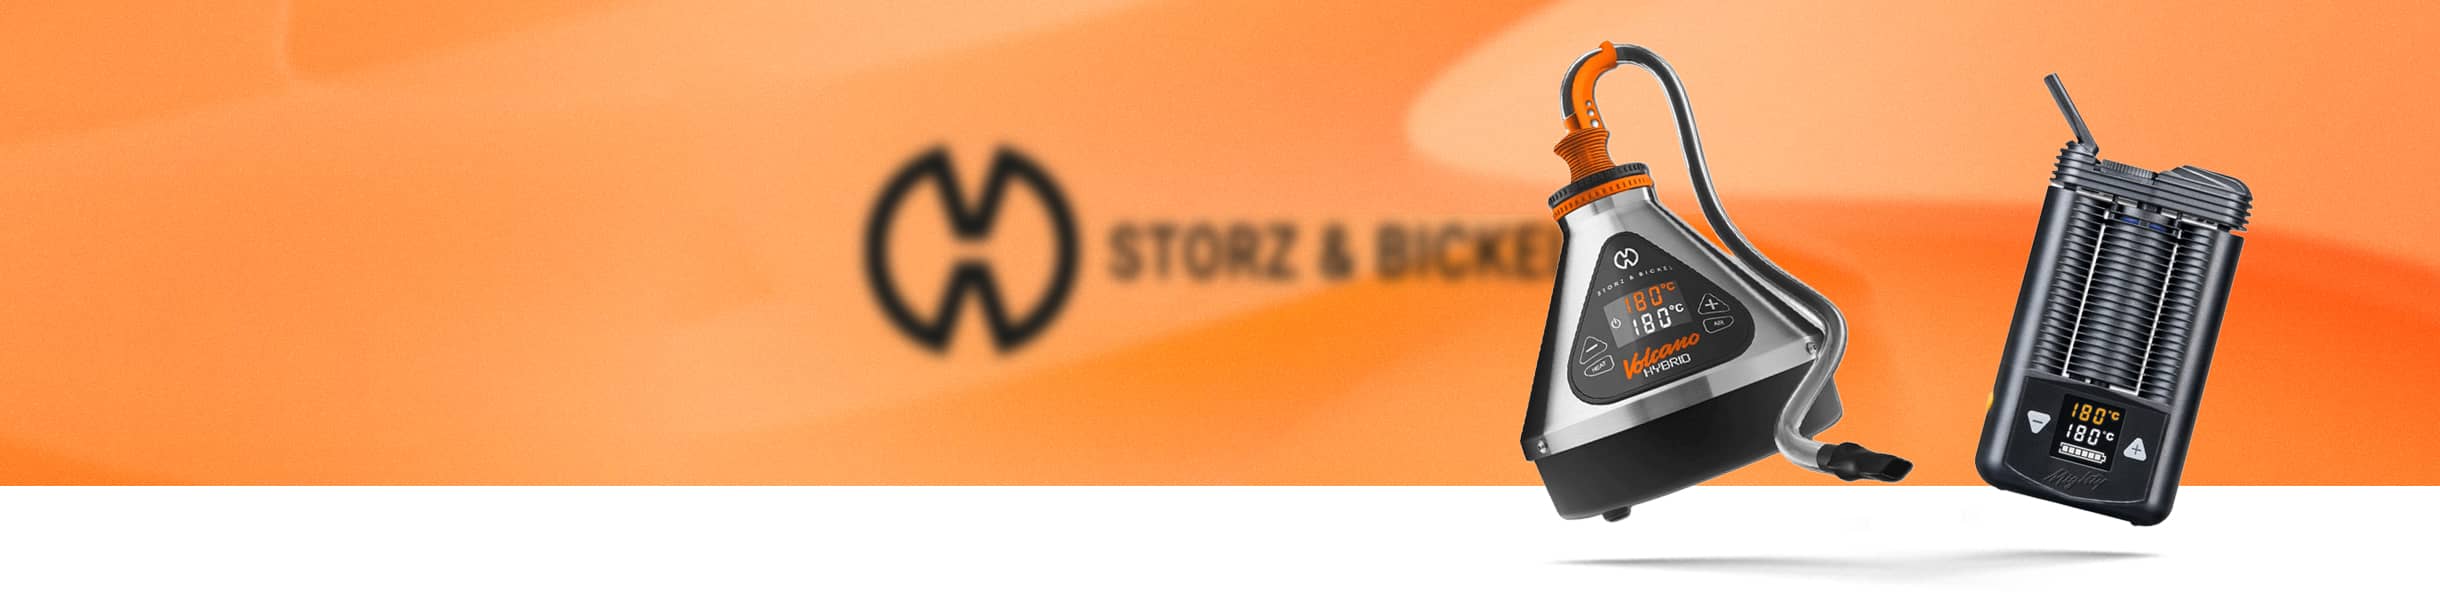 Storz und Bickel Online Shop